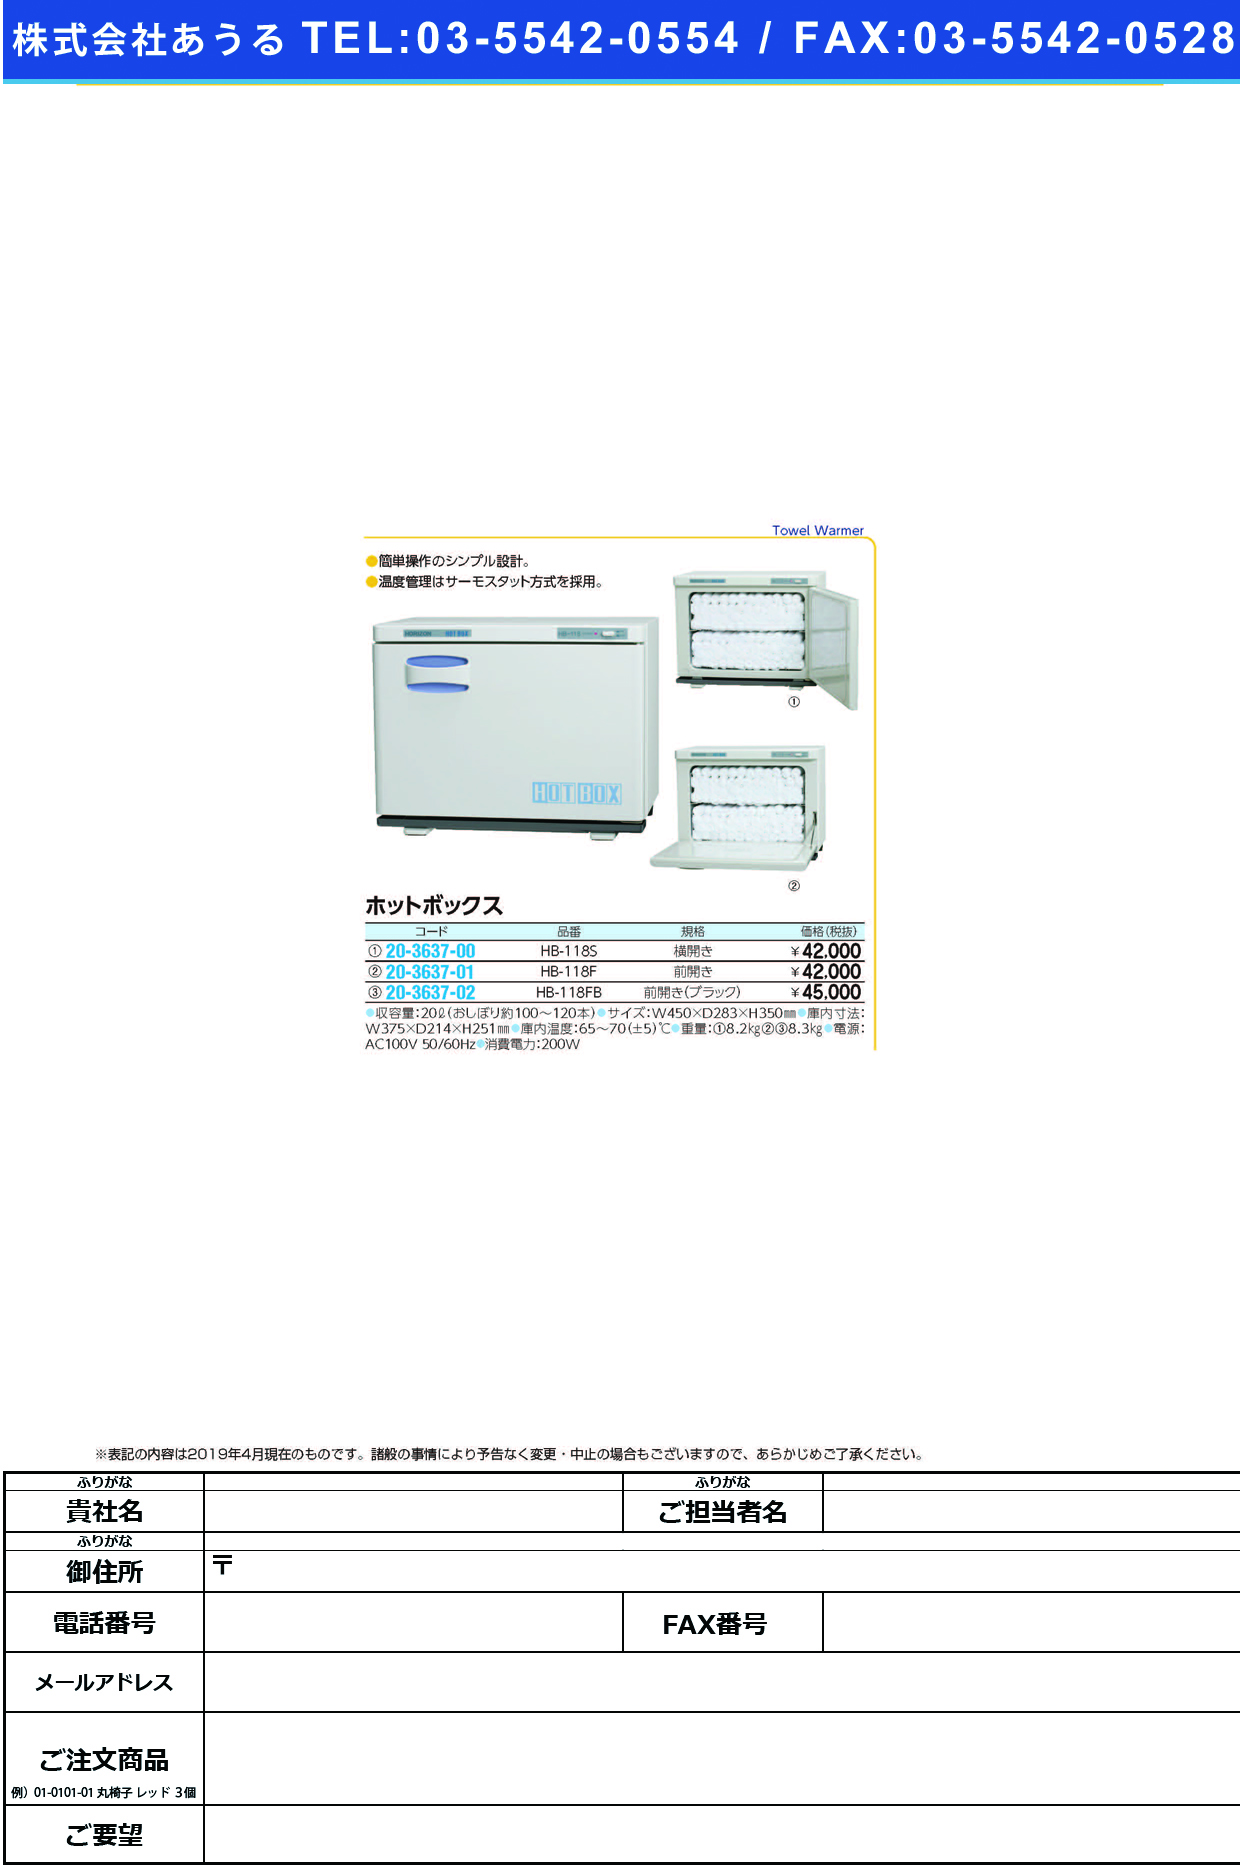 (20-3637-00)ホットボックス（横開き） HB-118S ﾎｯﾄﾎﾞｯｸｽ(ﾖｺﾋﾞﾗｷ)【1台単位】【2019年カタログ商品】